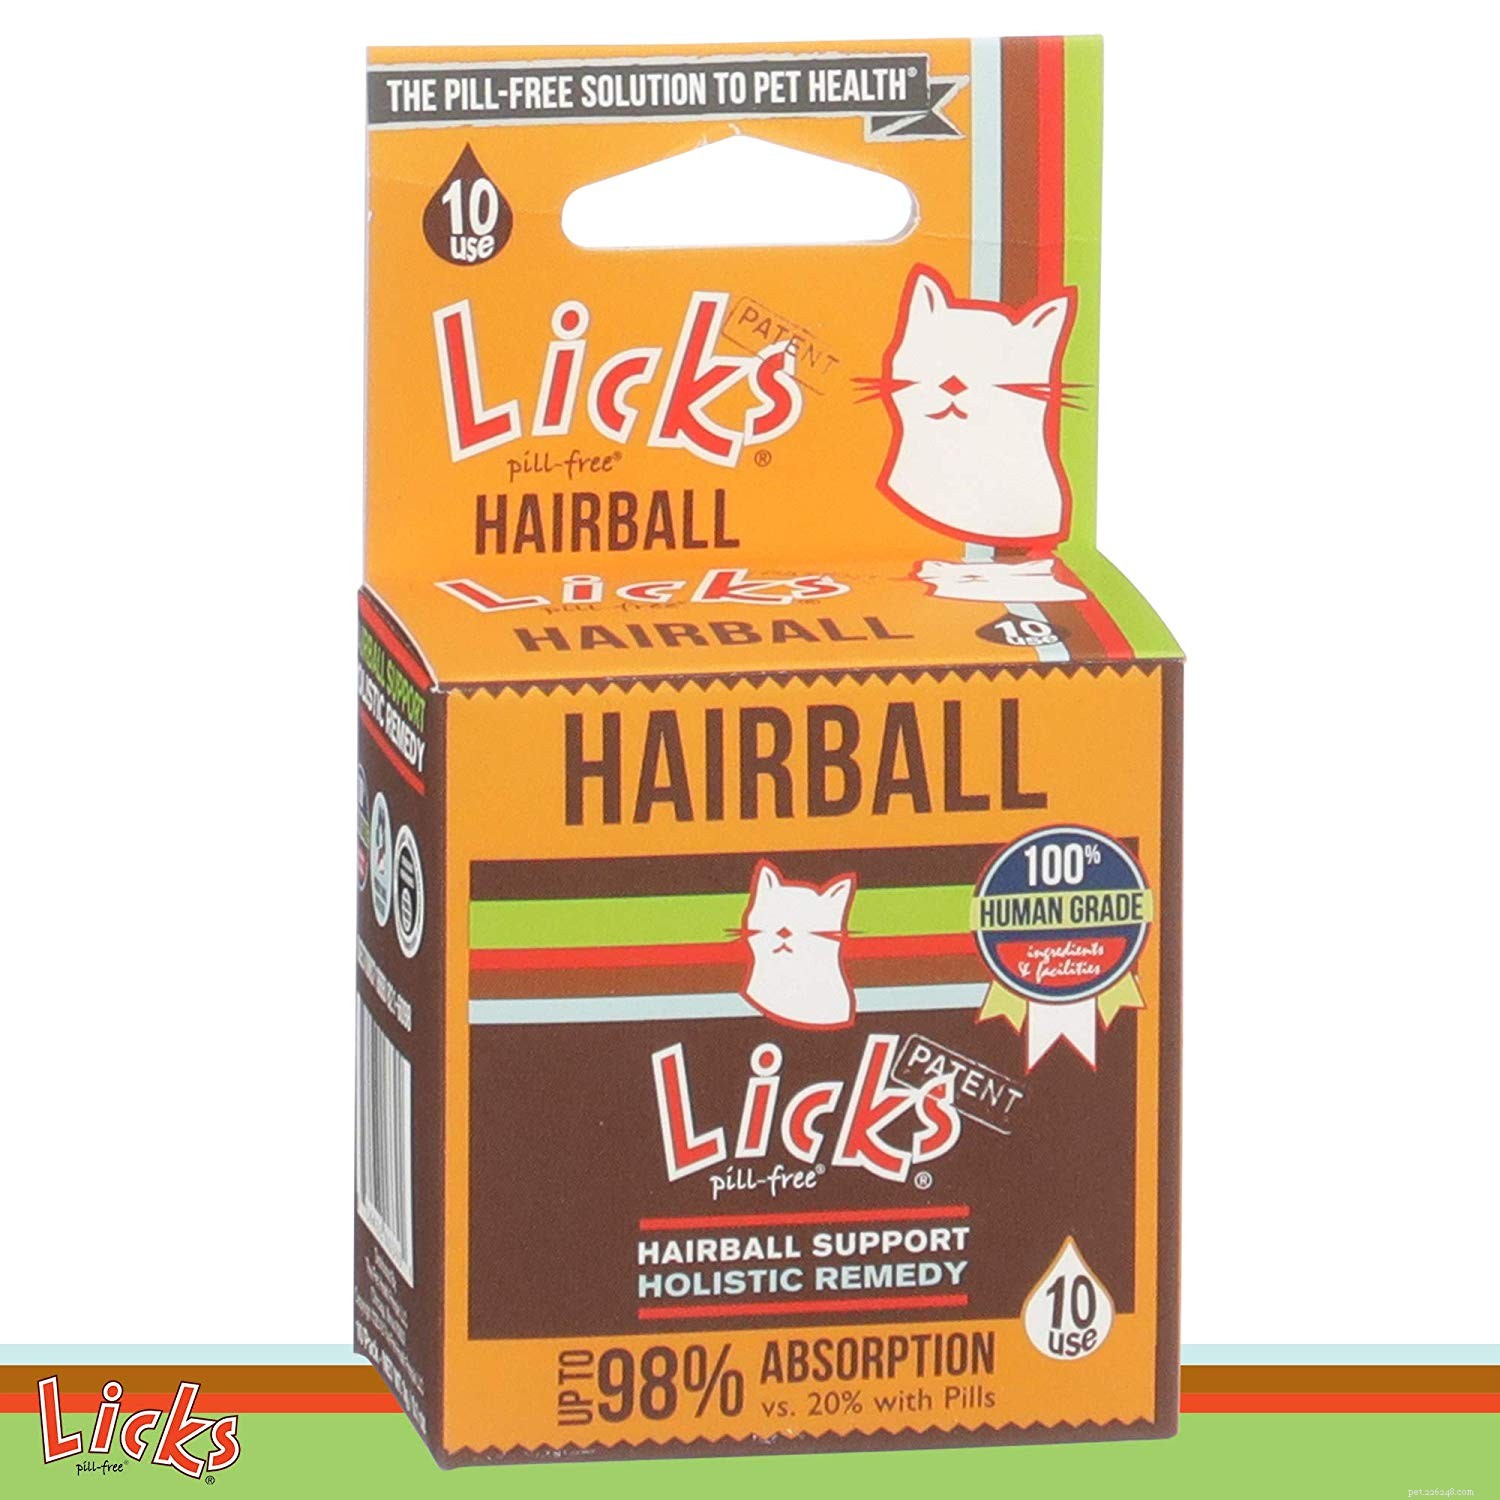 Beste haarbalcontroleproducten voor katten